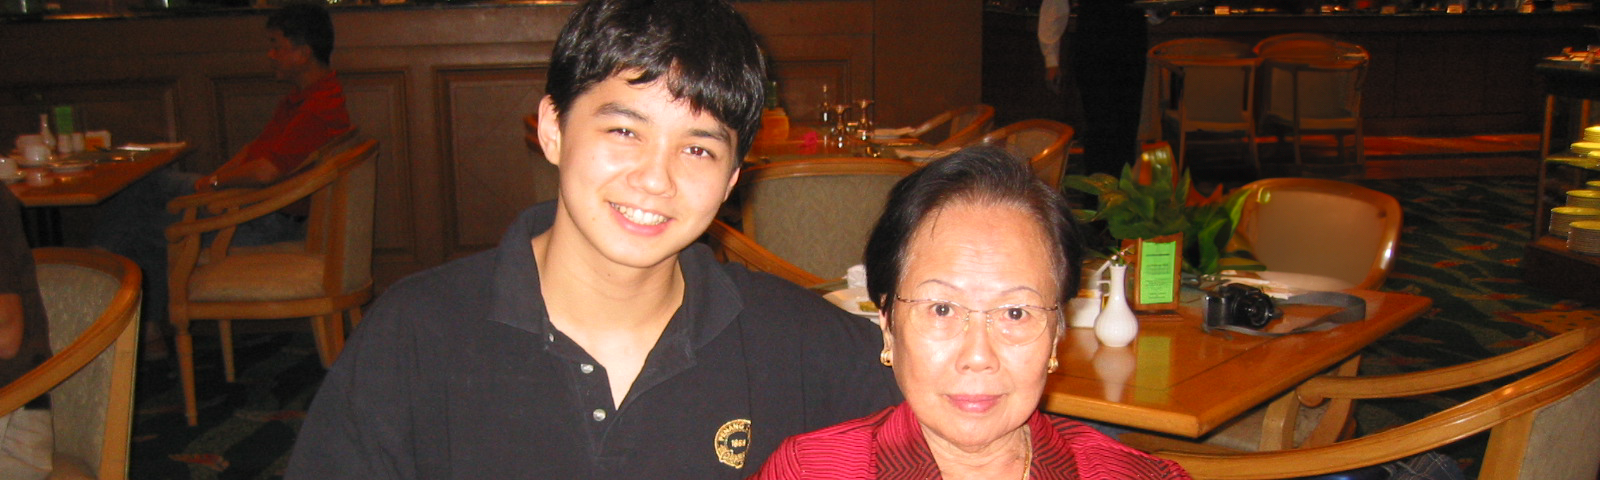 A smiling teenage boy next to his grandma.